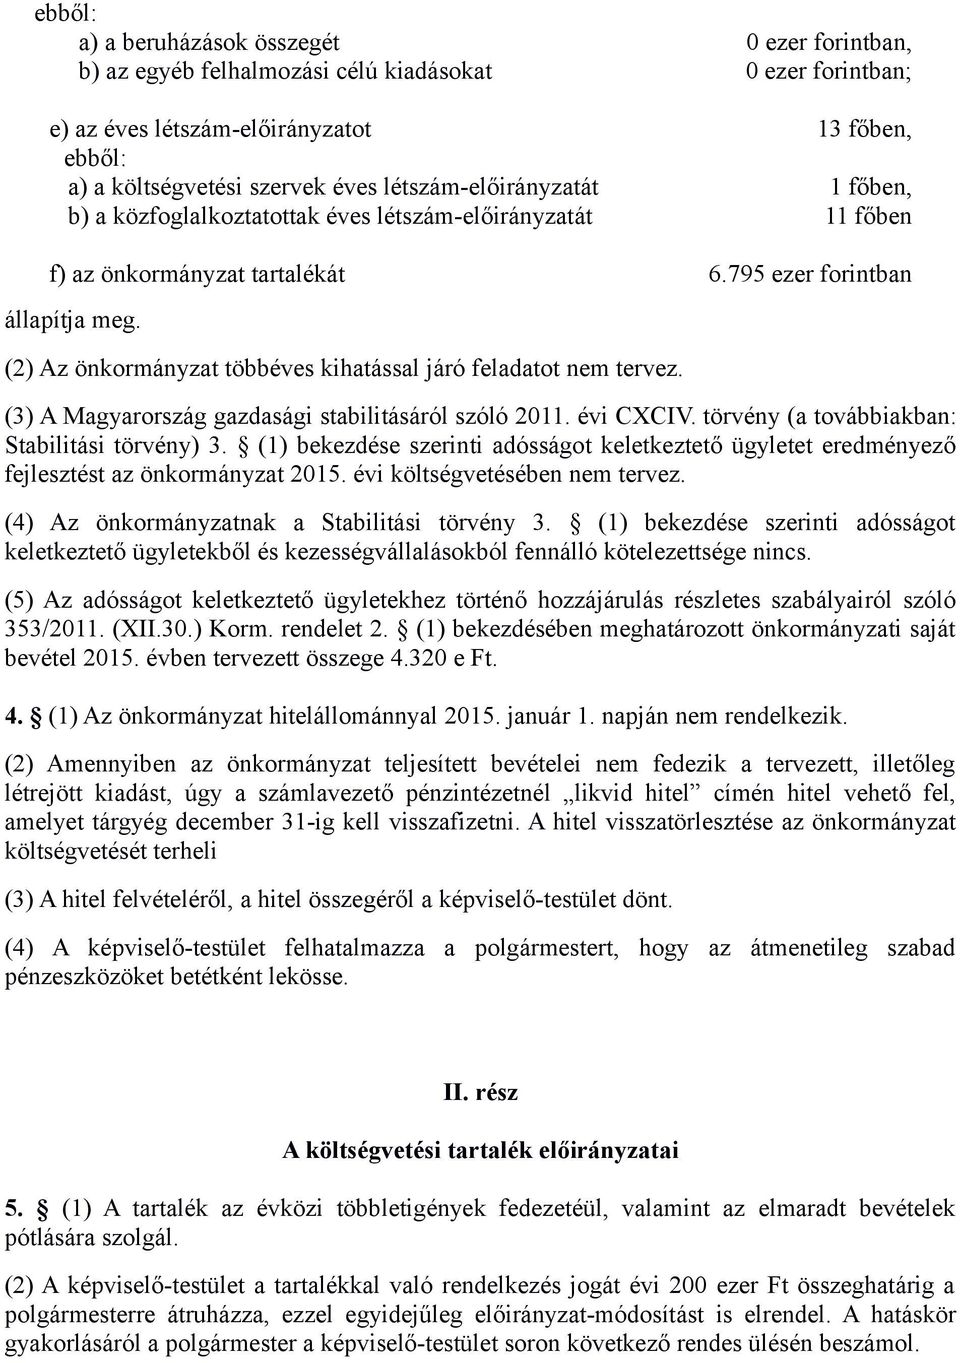 (2) Az önkormányzat többéves kihatással járó feladatot nem tervez. (3) A Magyarország gazdasági stabilitásáról szóló 2011. évi CXCIV. törvény (a továbbiakban: Stabilitási törvény) 3.